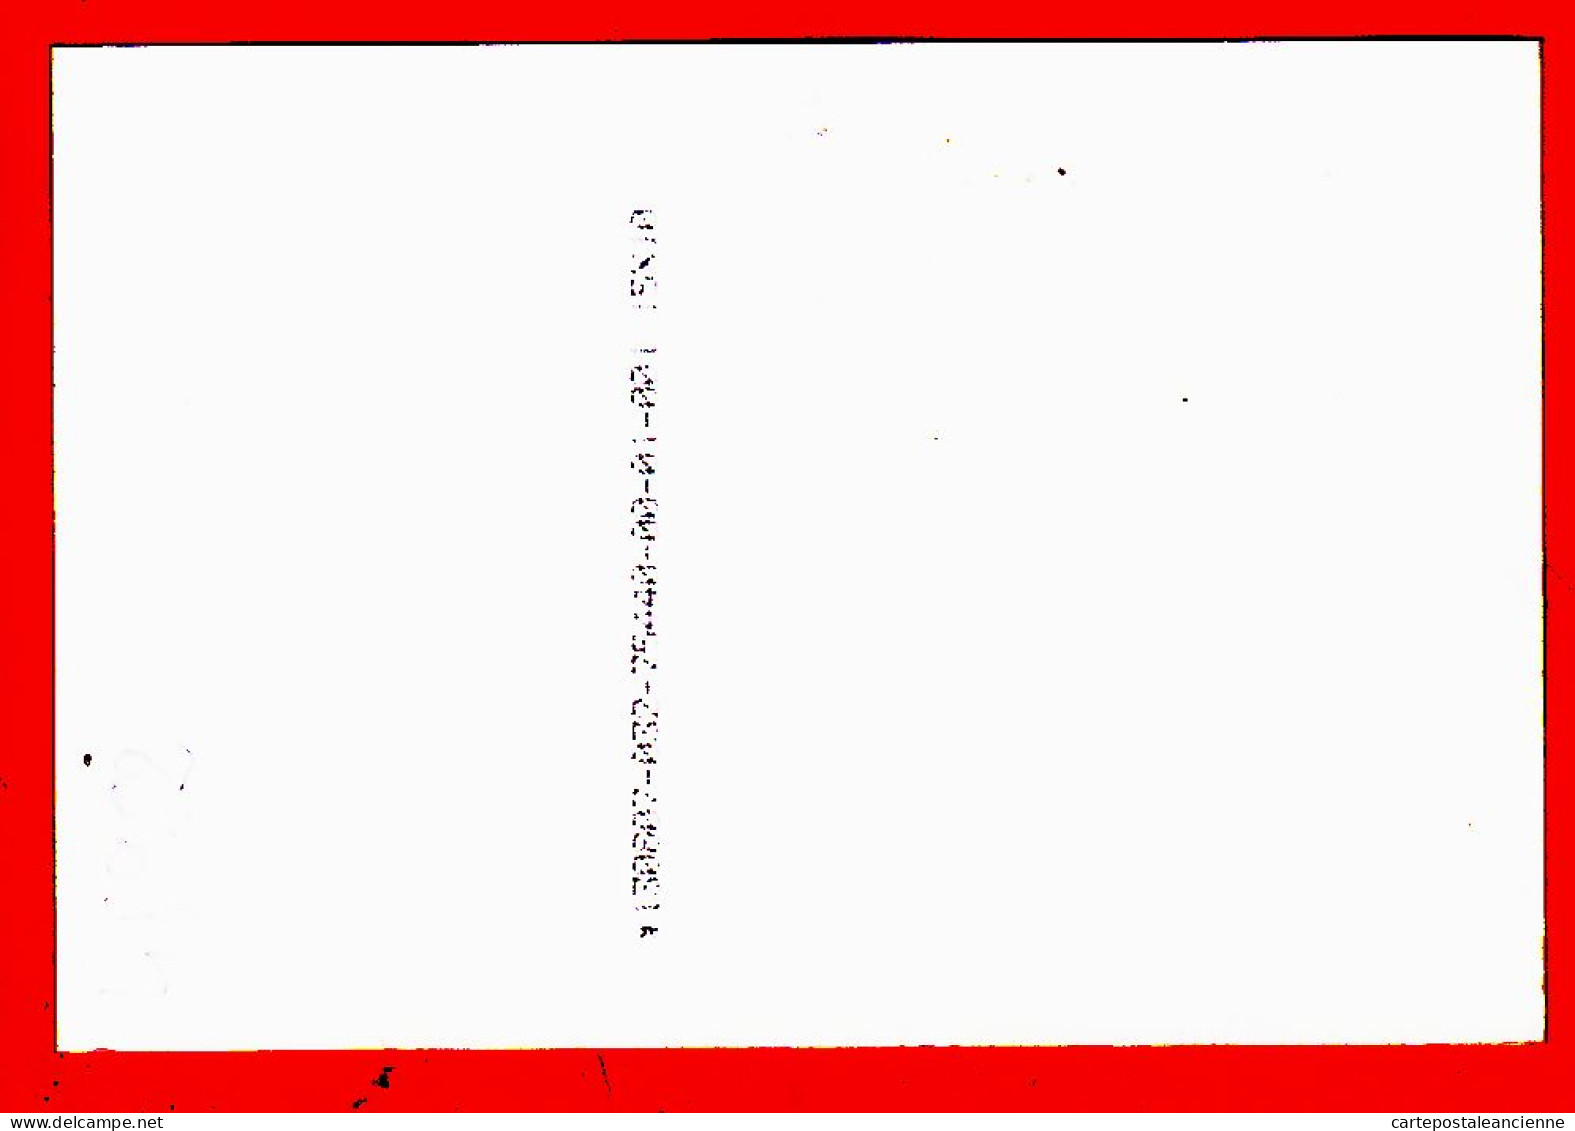 05236 ● SYLVIE VARTAN Dans Le Privé Moment De Lecture 1985s Photographie Sur Papier Fujifilm 10x15cm - Chanteurs & Musiciens